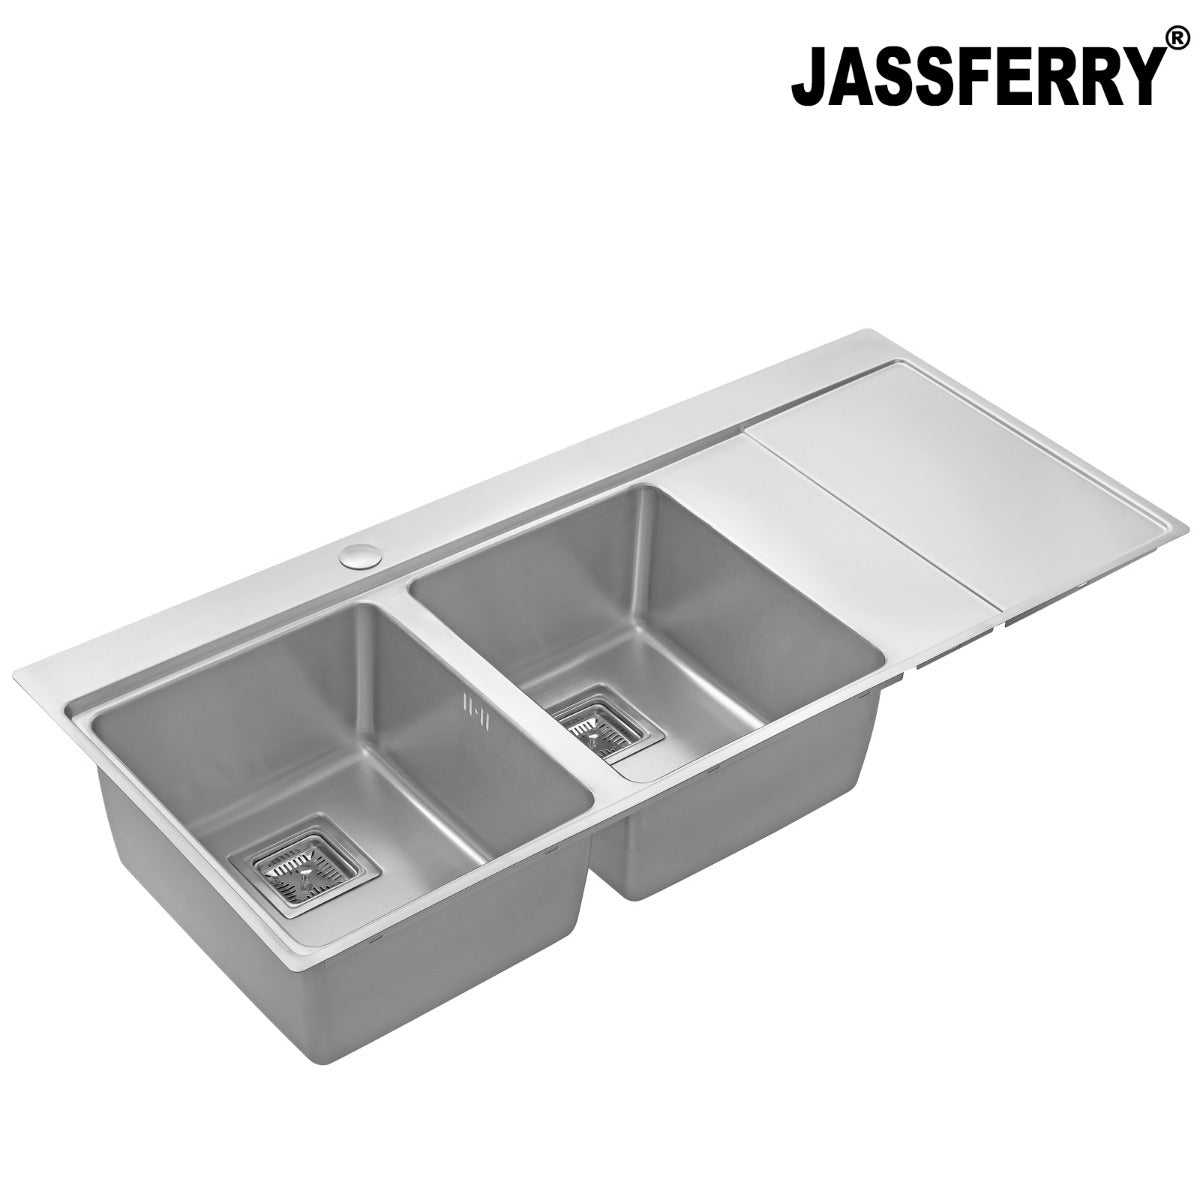 JassferryJASSFERRY Brilliant Stainless Steel Kitchen Sink Double Bowl Righthand Drainer - 663Kitchen Sinks